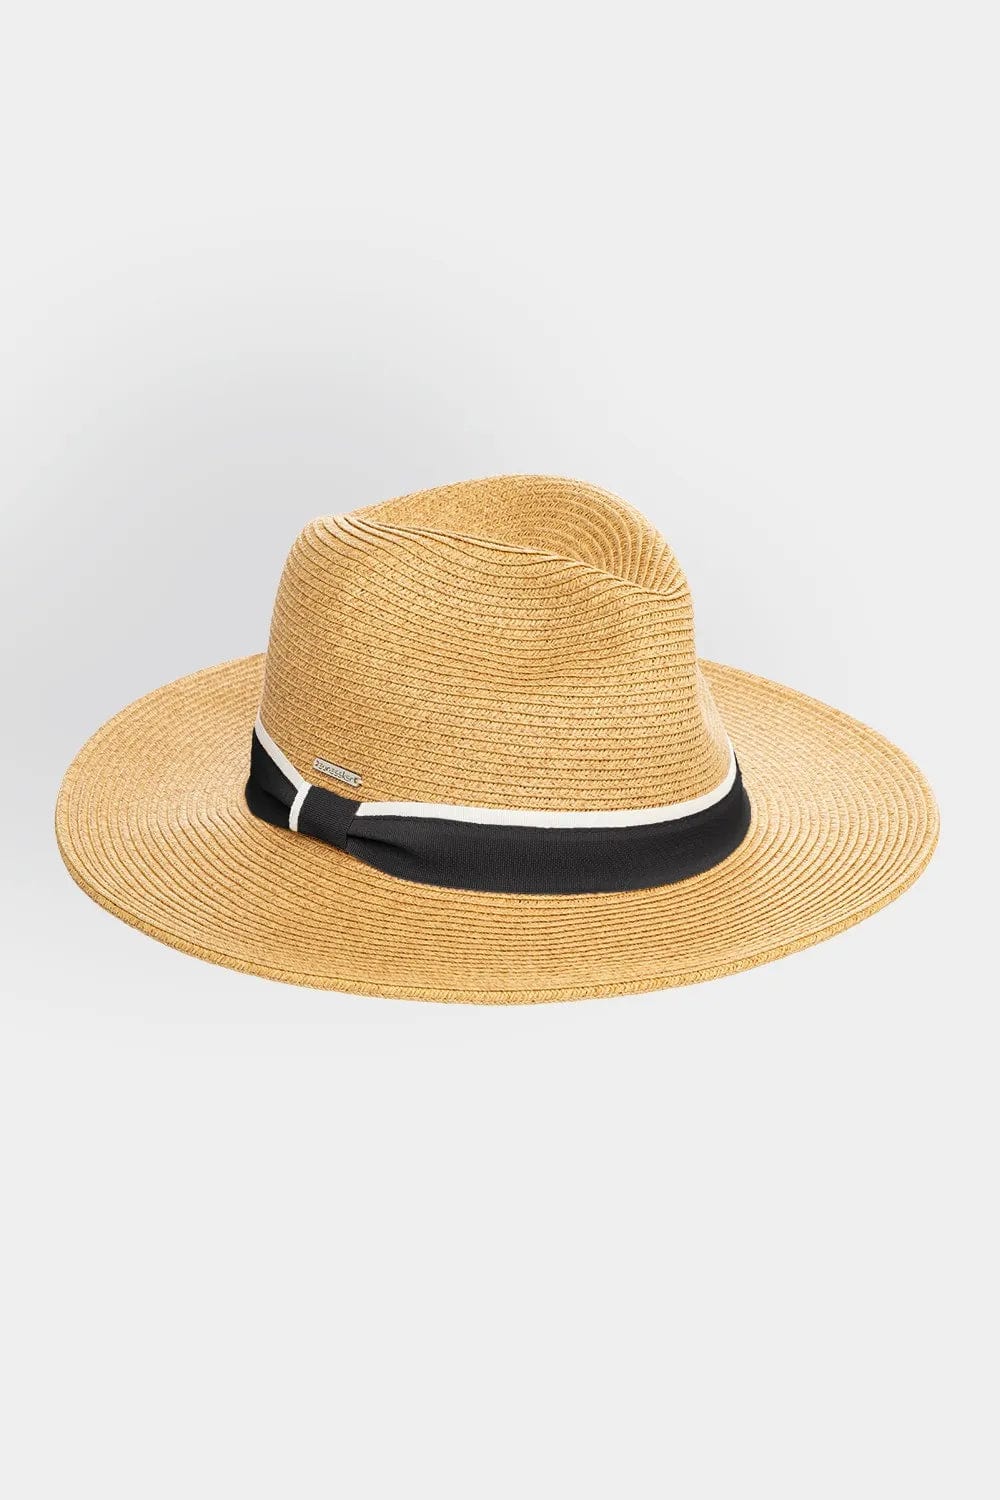 Byron Hat - Sunseeker - Splash Swimwear  - hat, hats, July22, Sunseeker, Womens - Splash Swimwear 